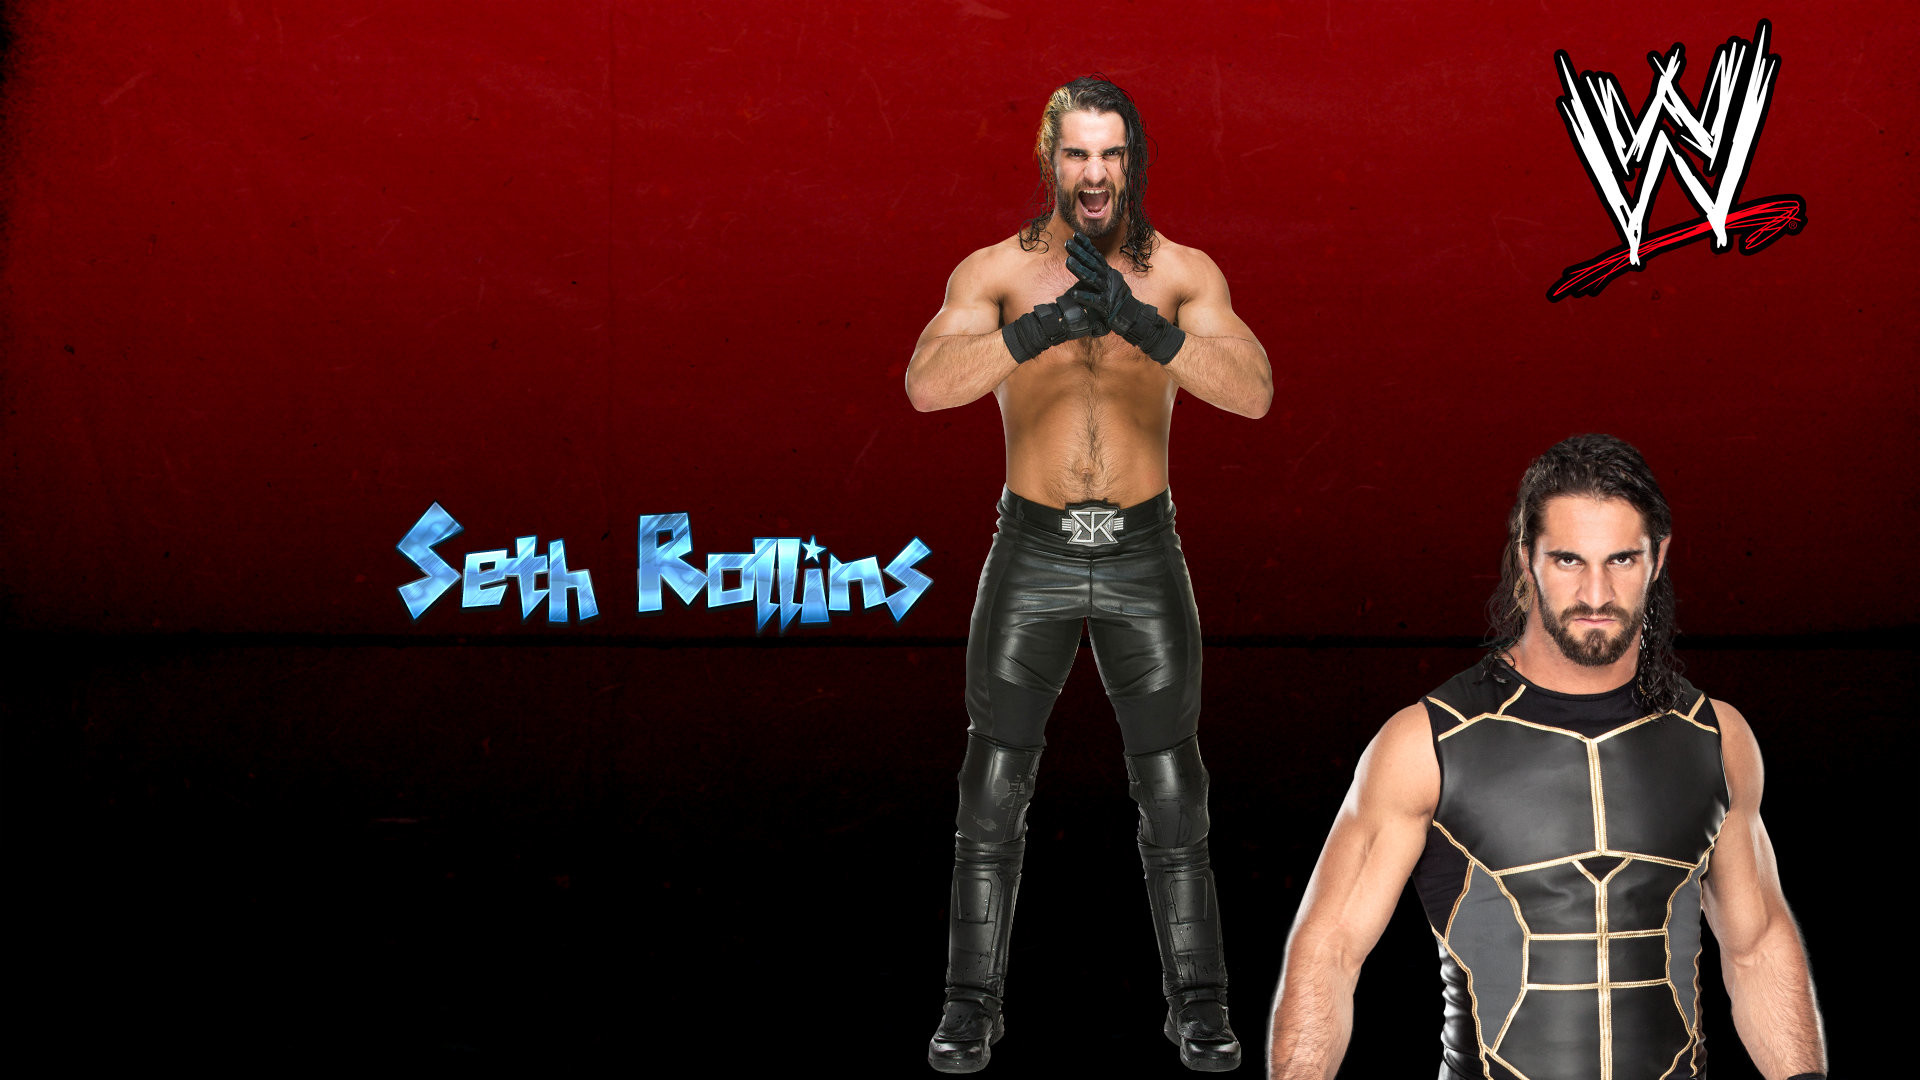 1920x1080 WWE Wrestler Seth Rollins HD Wallpapers